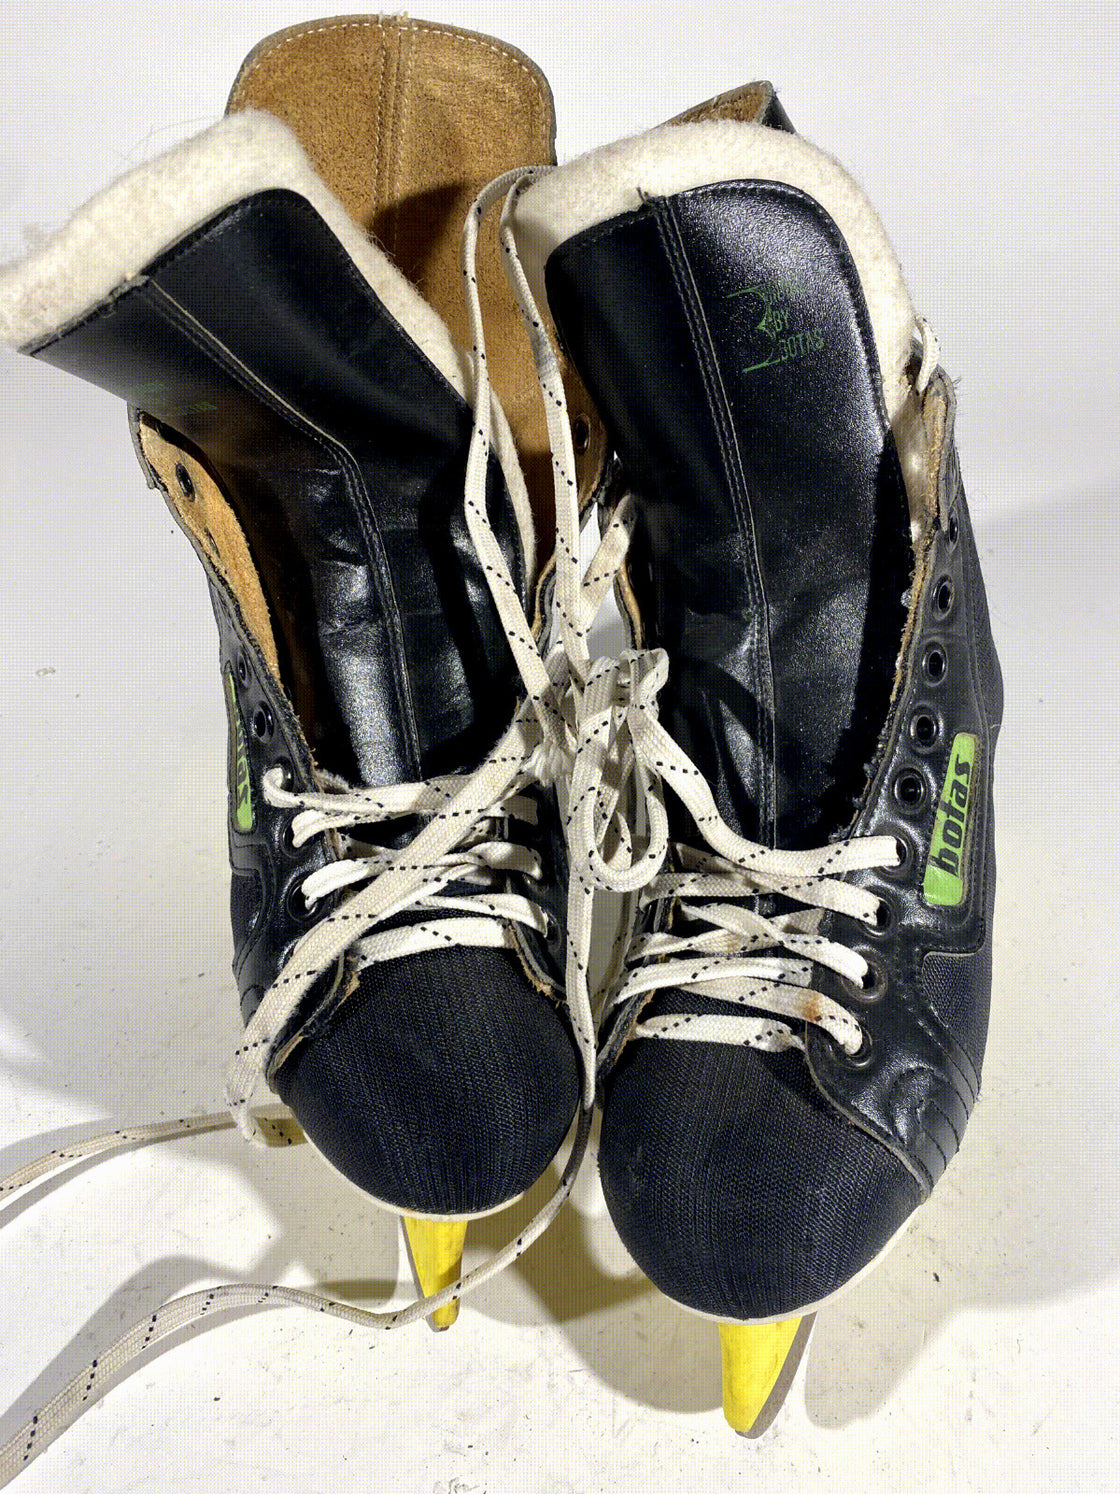 Botas Ice Skates for Ice Hockey Shoes Unisex Size US7.5 EU40 Mondo 255